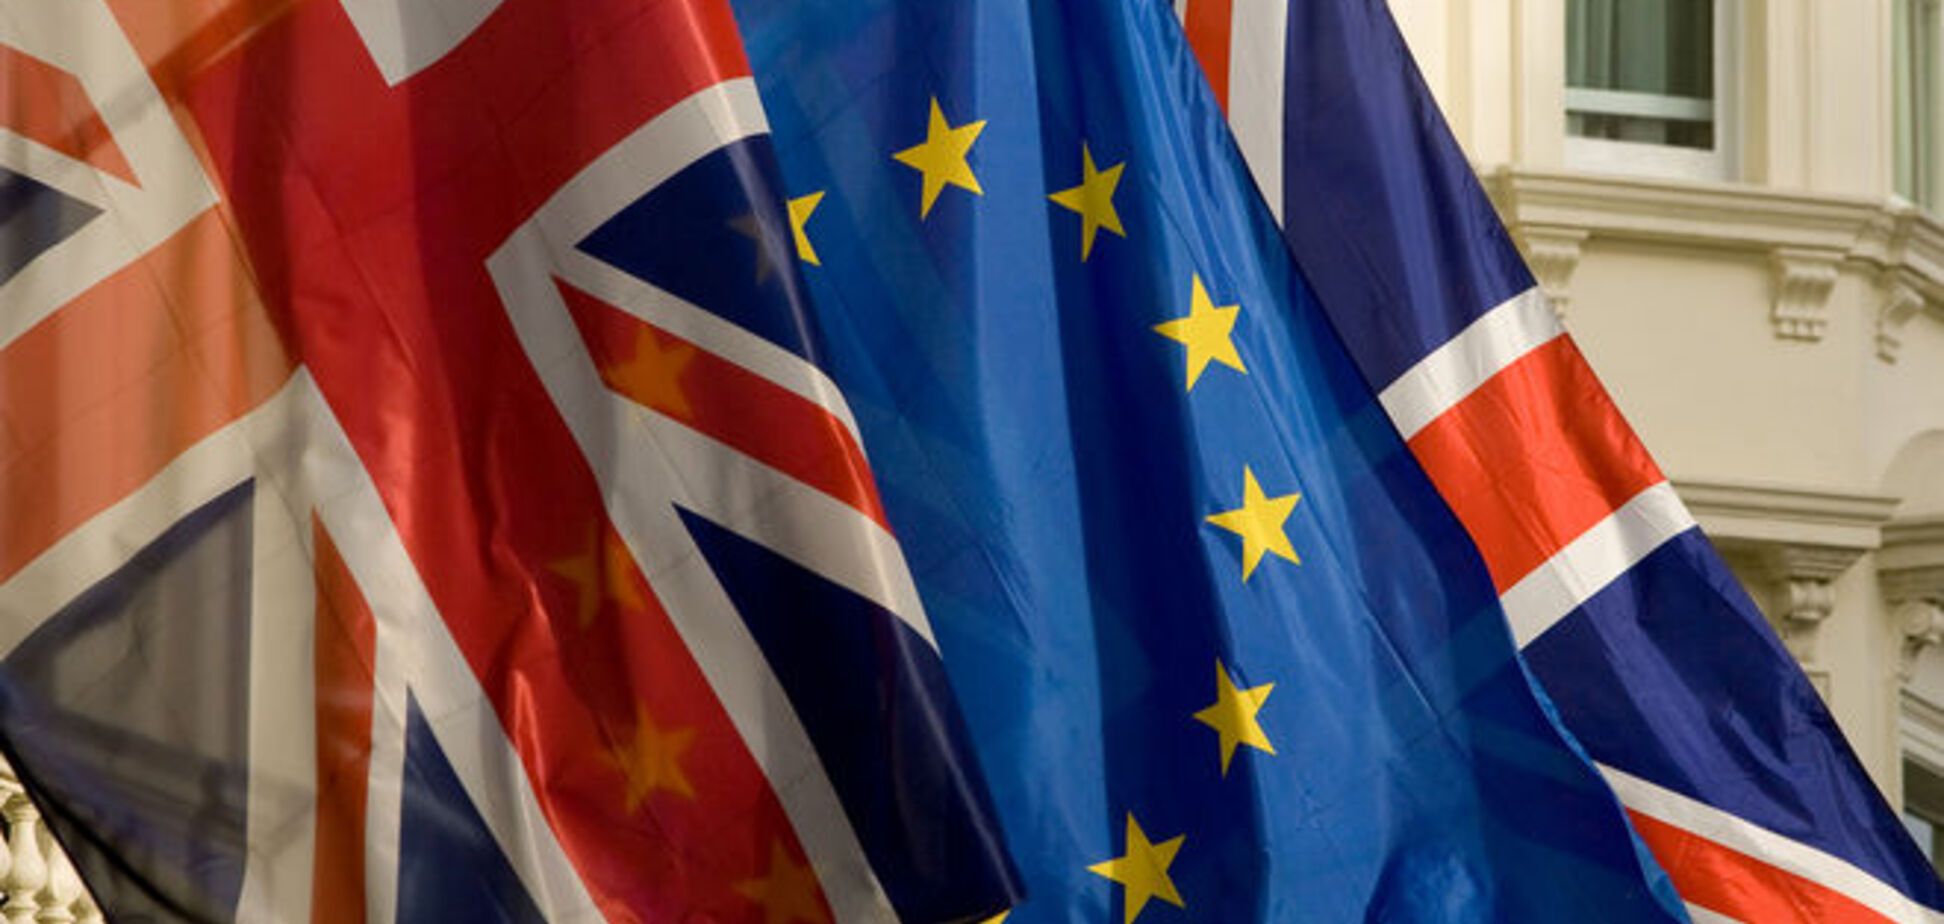 Проти розлучення Великобританії з ЄС висловилися 55% громадян - опитування 